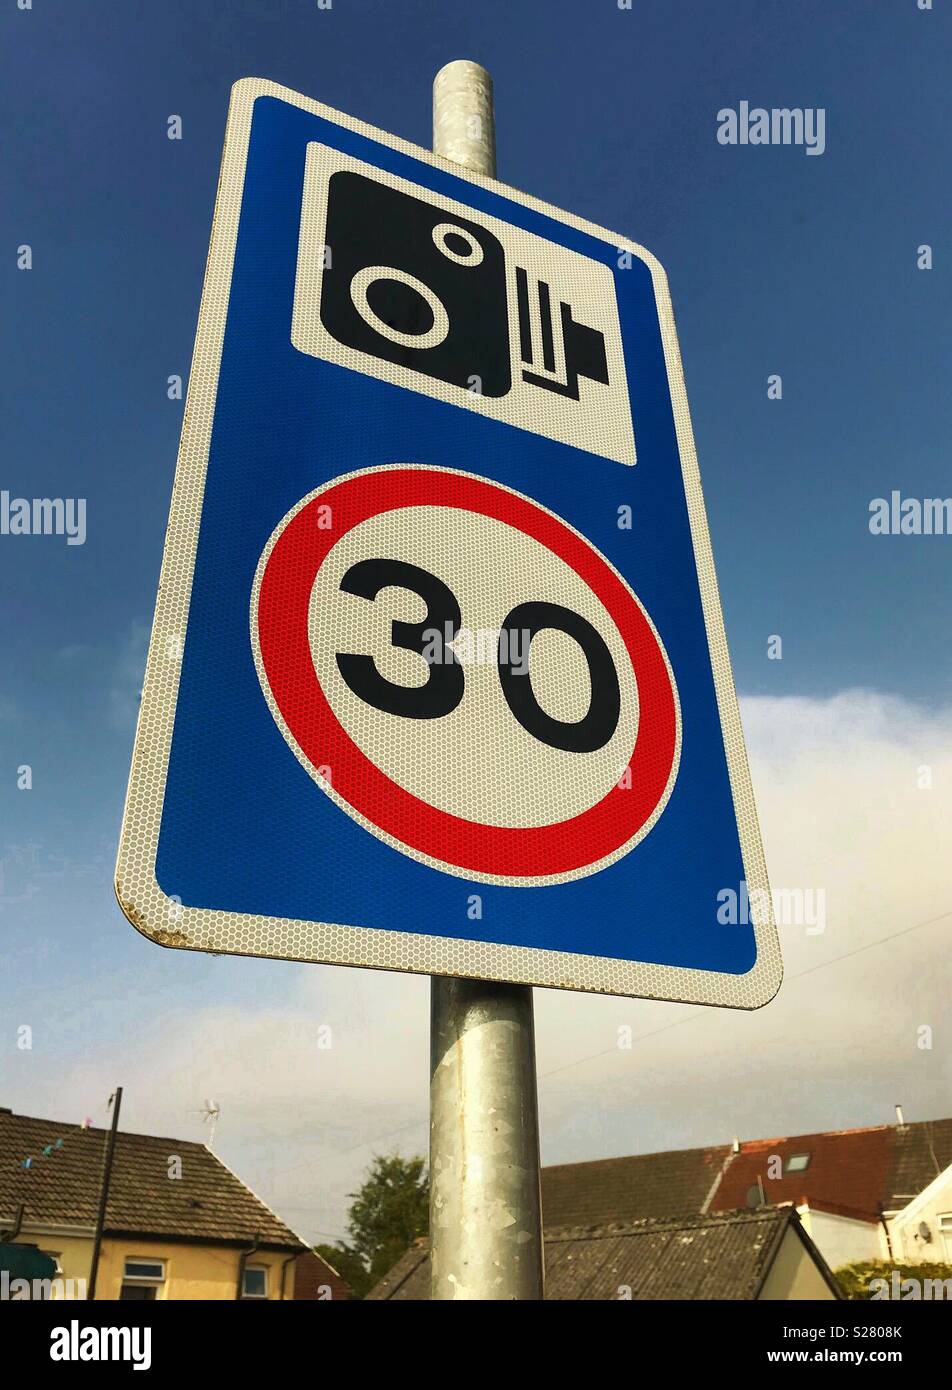 Panneau routier dans un quartier montrant l'utilisation des radars pour faire respecter la limite de 30 kilomètres par heure Banque D'Images